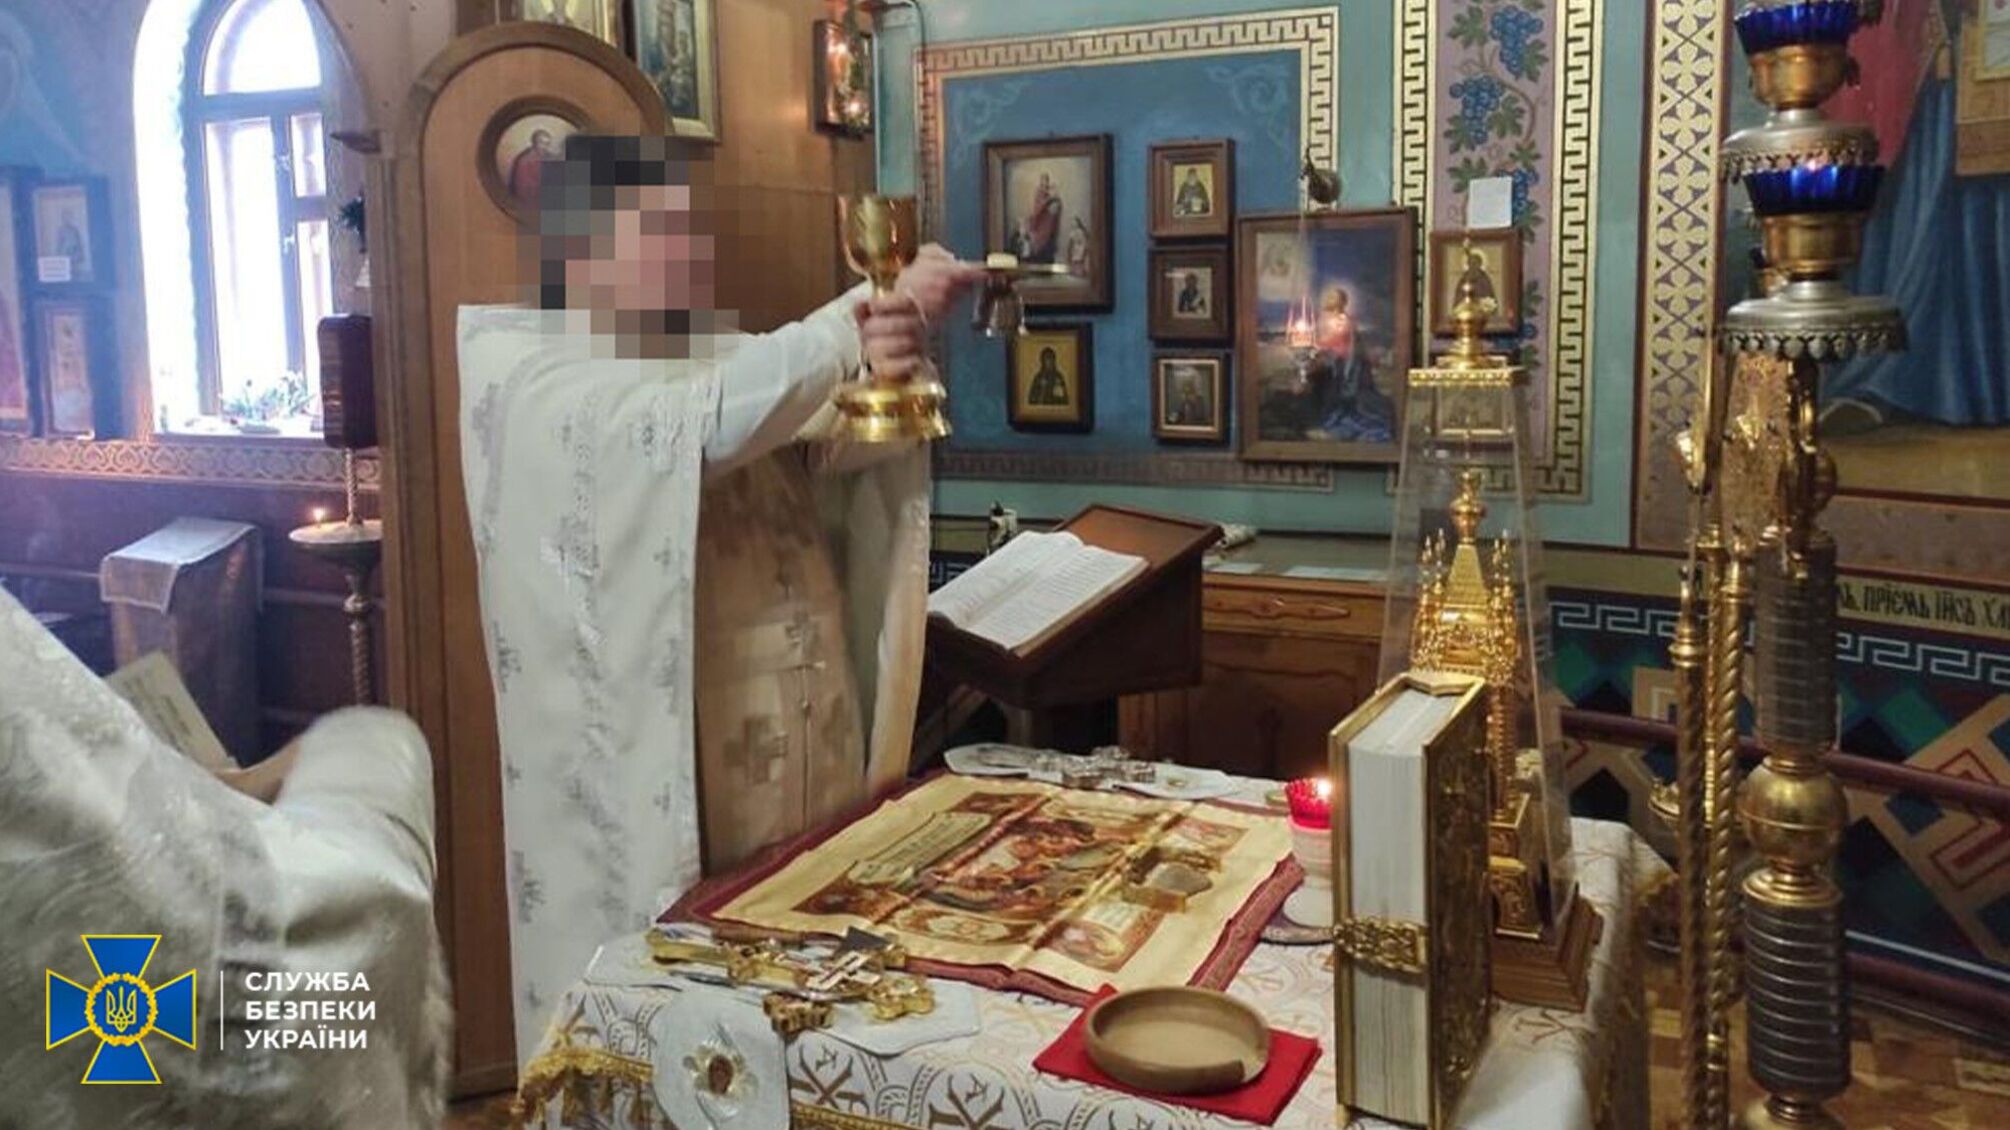 'Зливав' позиції ЗСУ в Сєвєродонецьку: до 12 років ув’язнення засуджено священника УПЦ (МП)